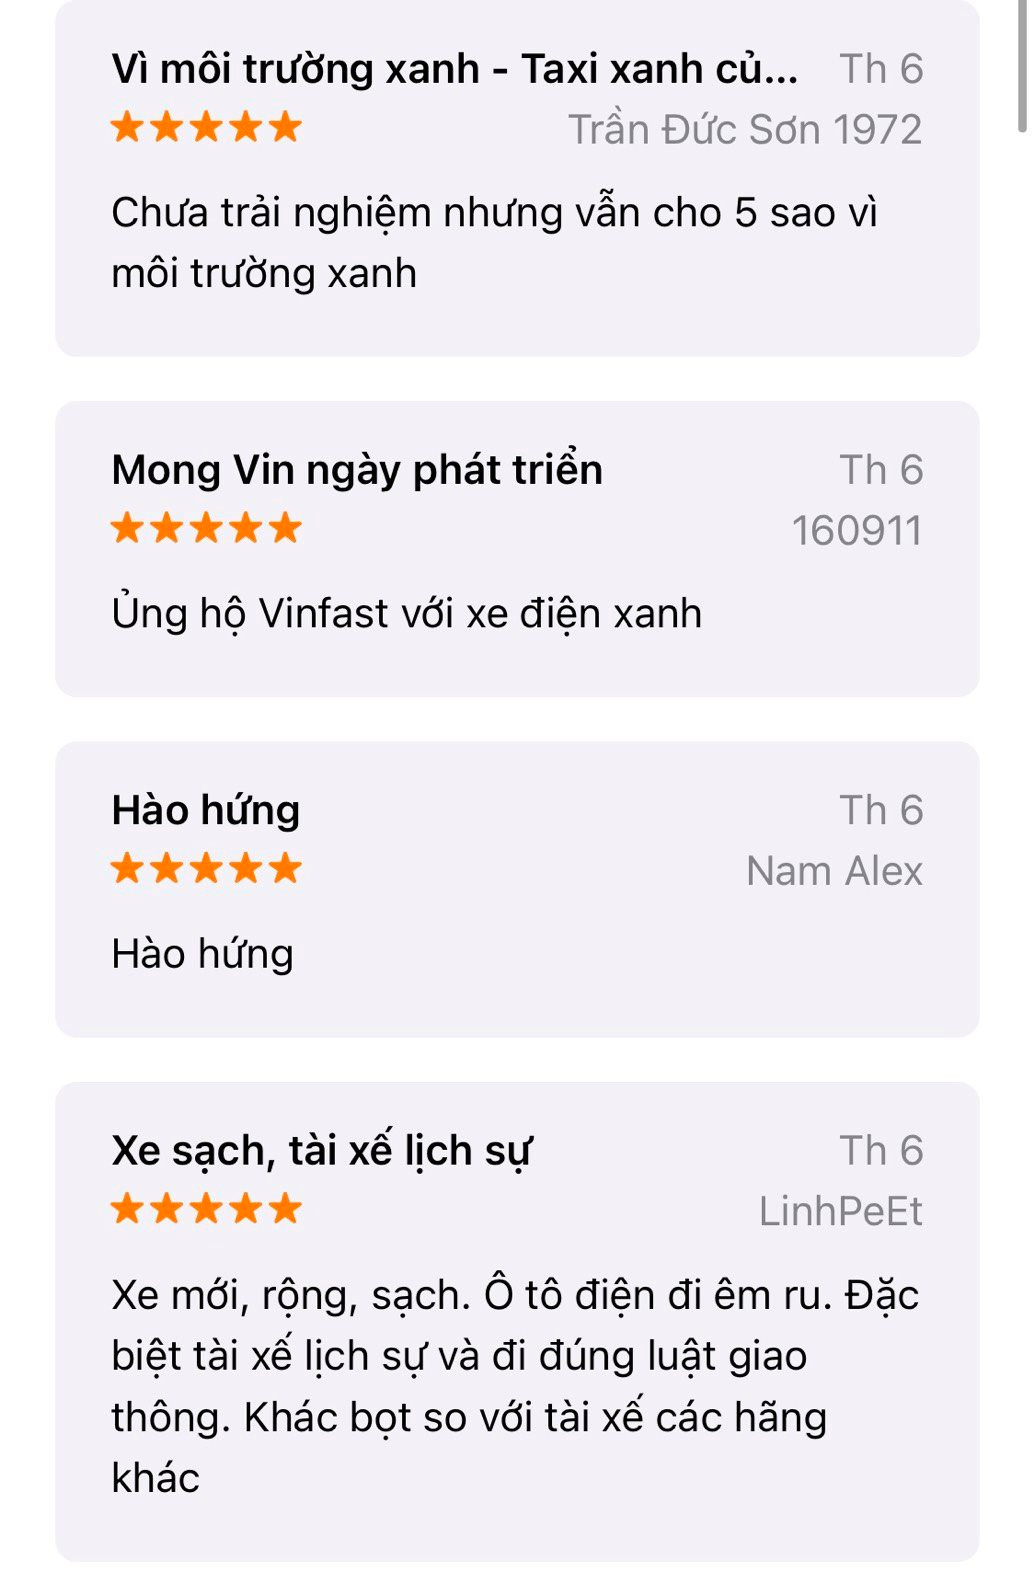 Người dùng đang đánh giá Taxi Xanh SM trên App Store ra sao: Có 1 tính năng khách hàng muốn bổ sung gấp! - Ảnh 2.